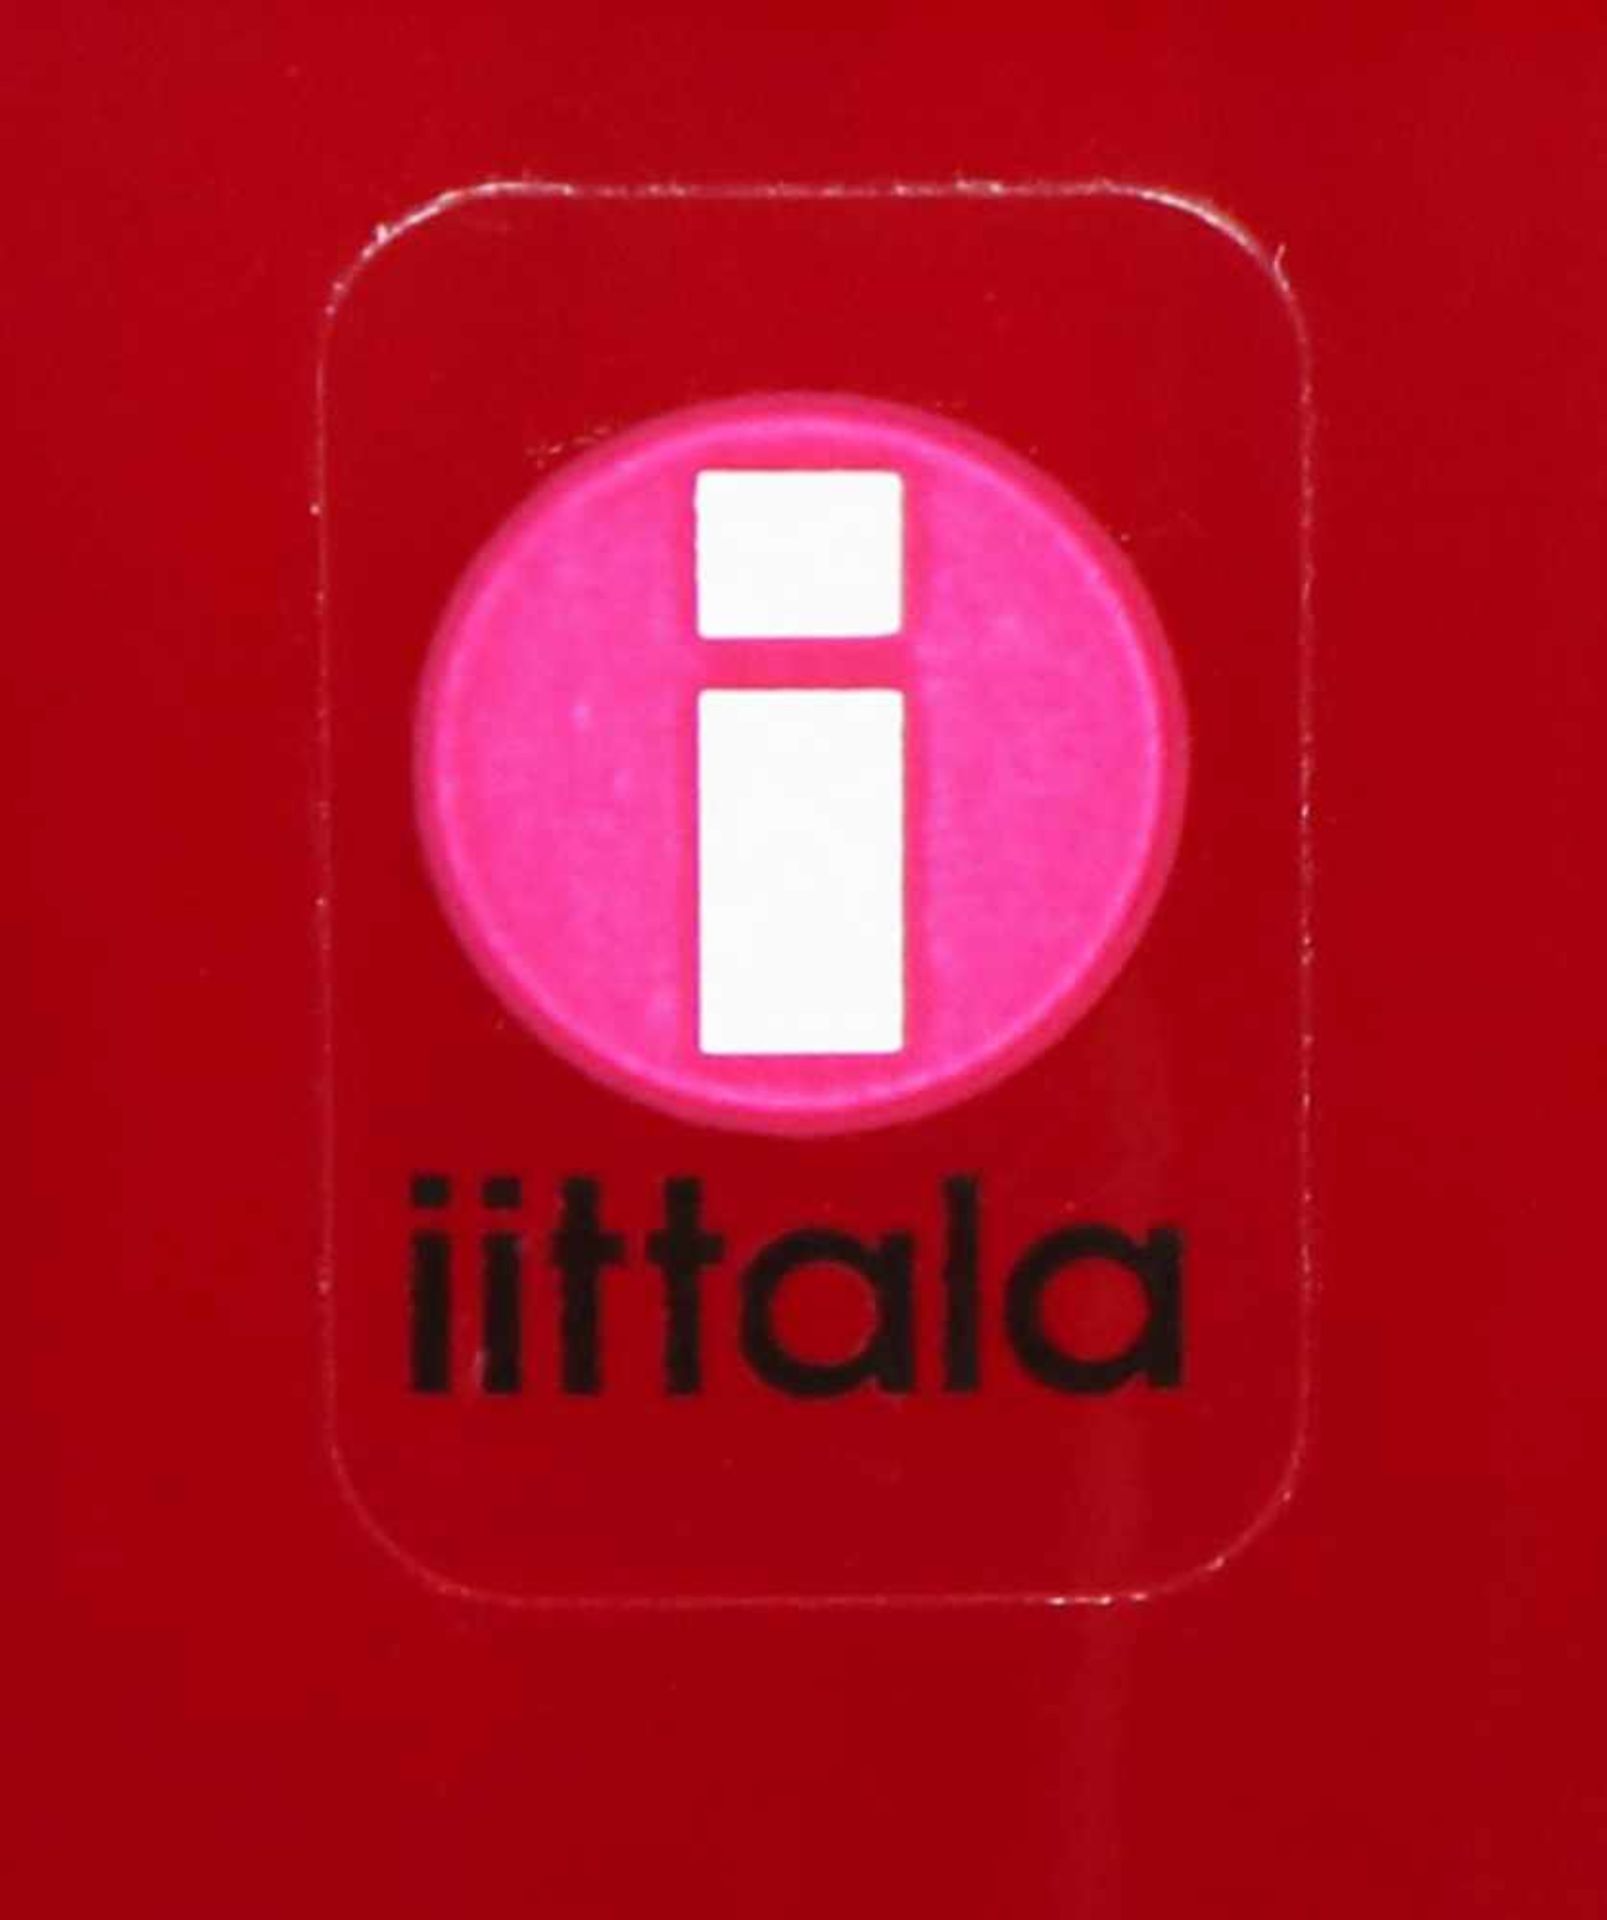 ALVAR AALTO GlasvaseAusführung Iittala, rotes Glas, organische Form, am Boden Ätzmarke, H ca. 16cm - Bild 2 aus 2